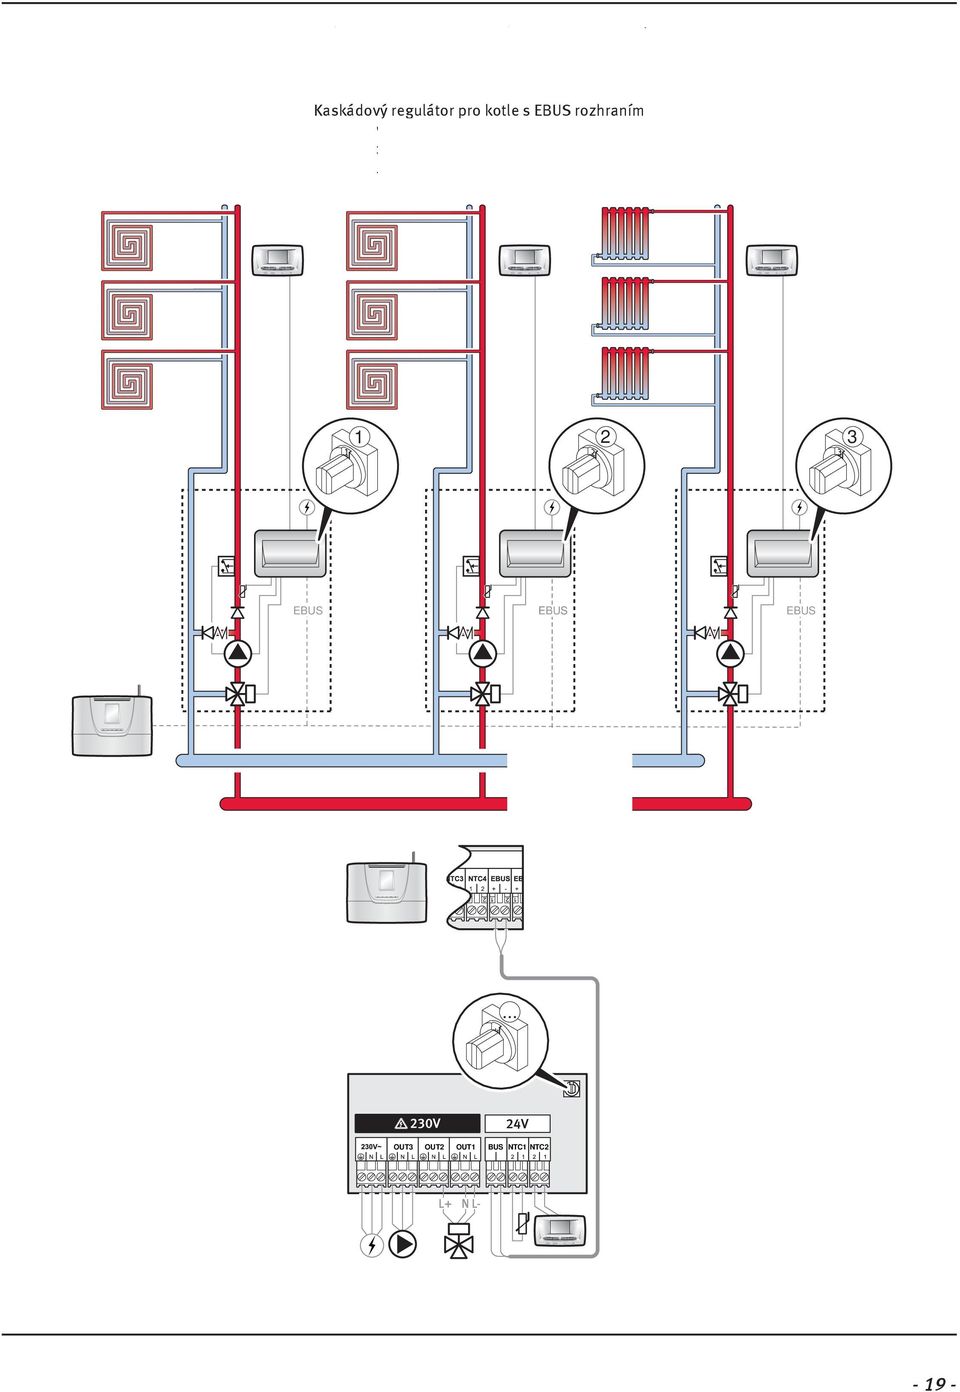 Kaskádový regulátor pro kotle s rozhraním Vykurovací systém pre ebus kotly v kaskáde boilers in